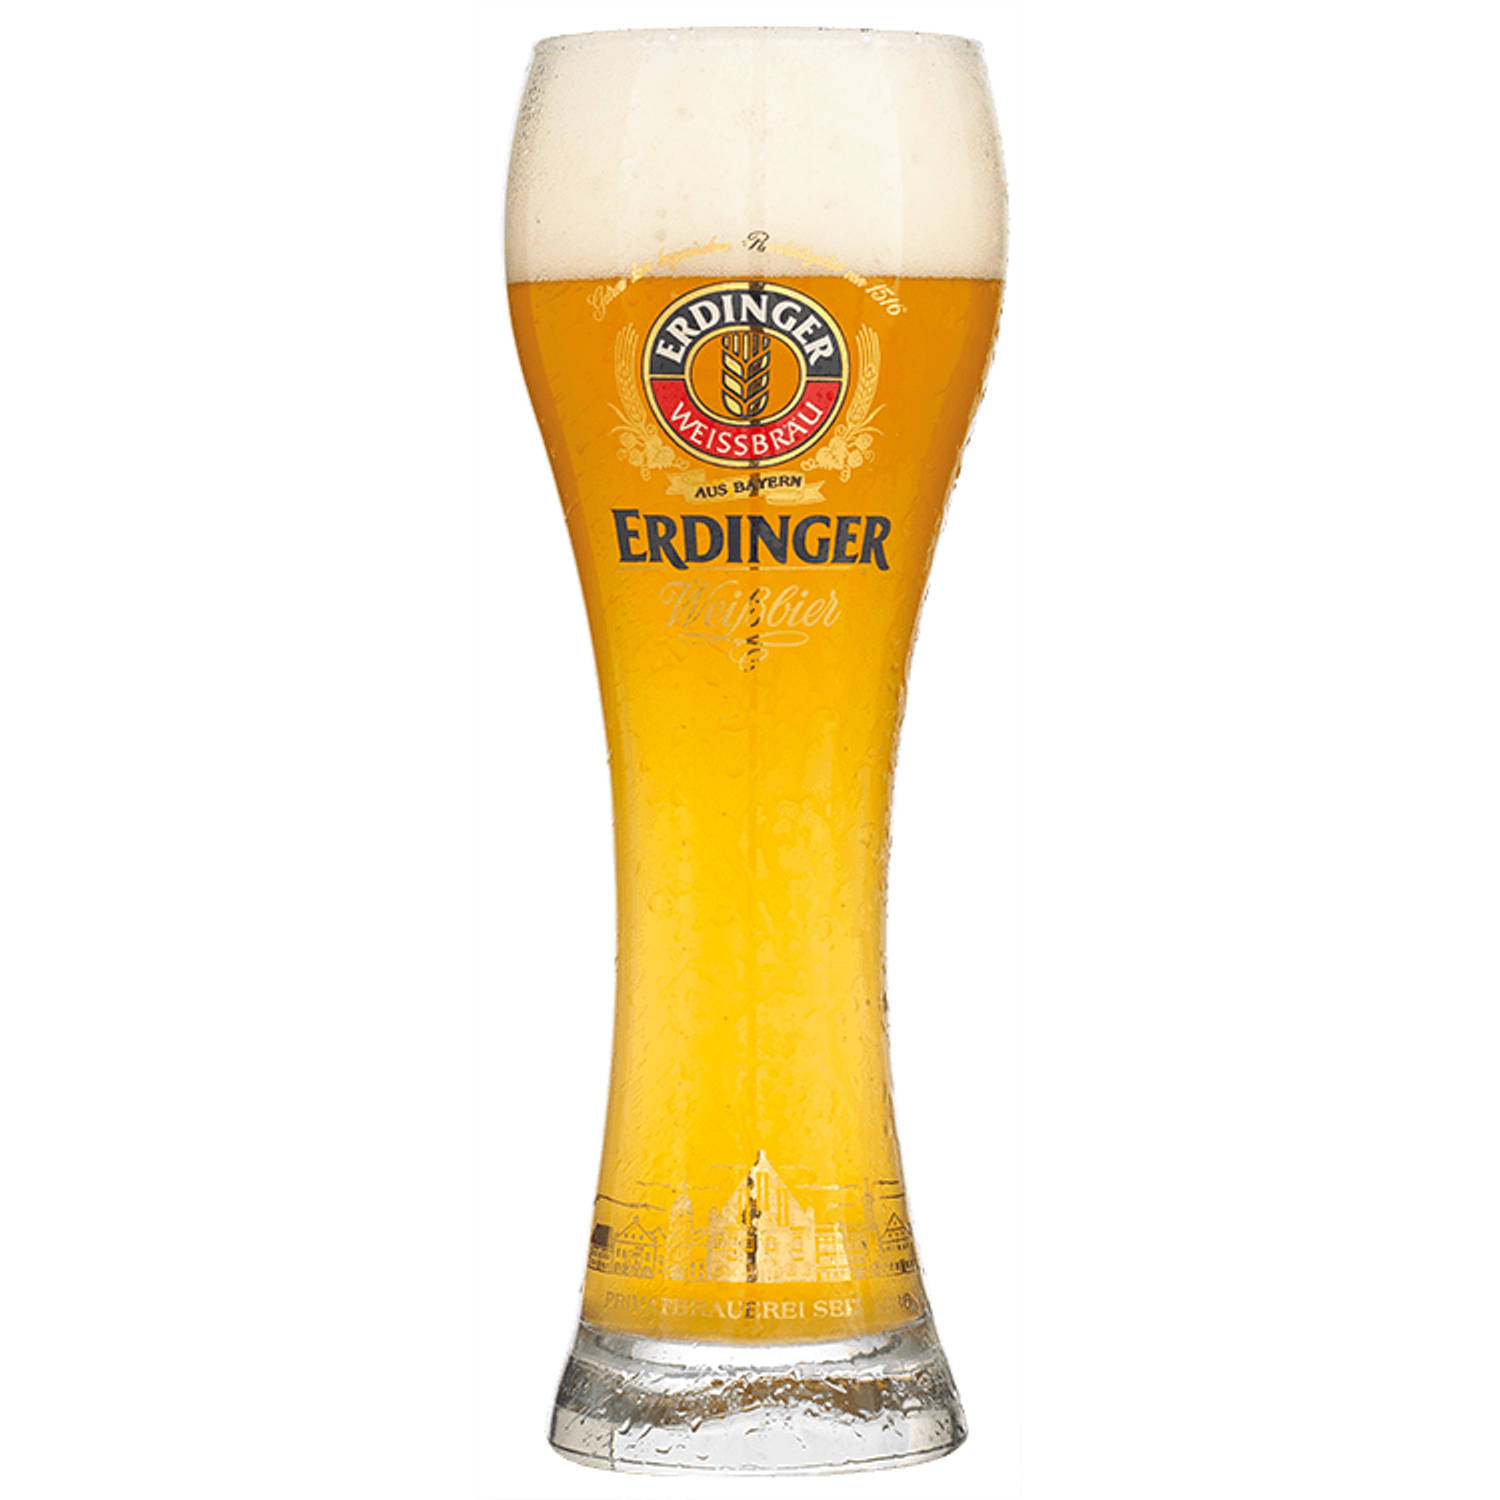 Erdinger Bierglas 50cl - Bier Glas 0,5 l - Taps Toelopend - 500 ml